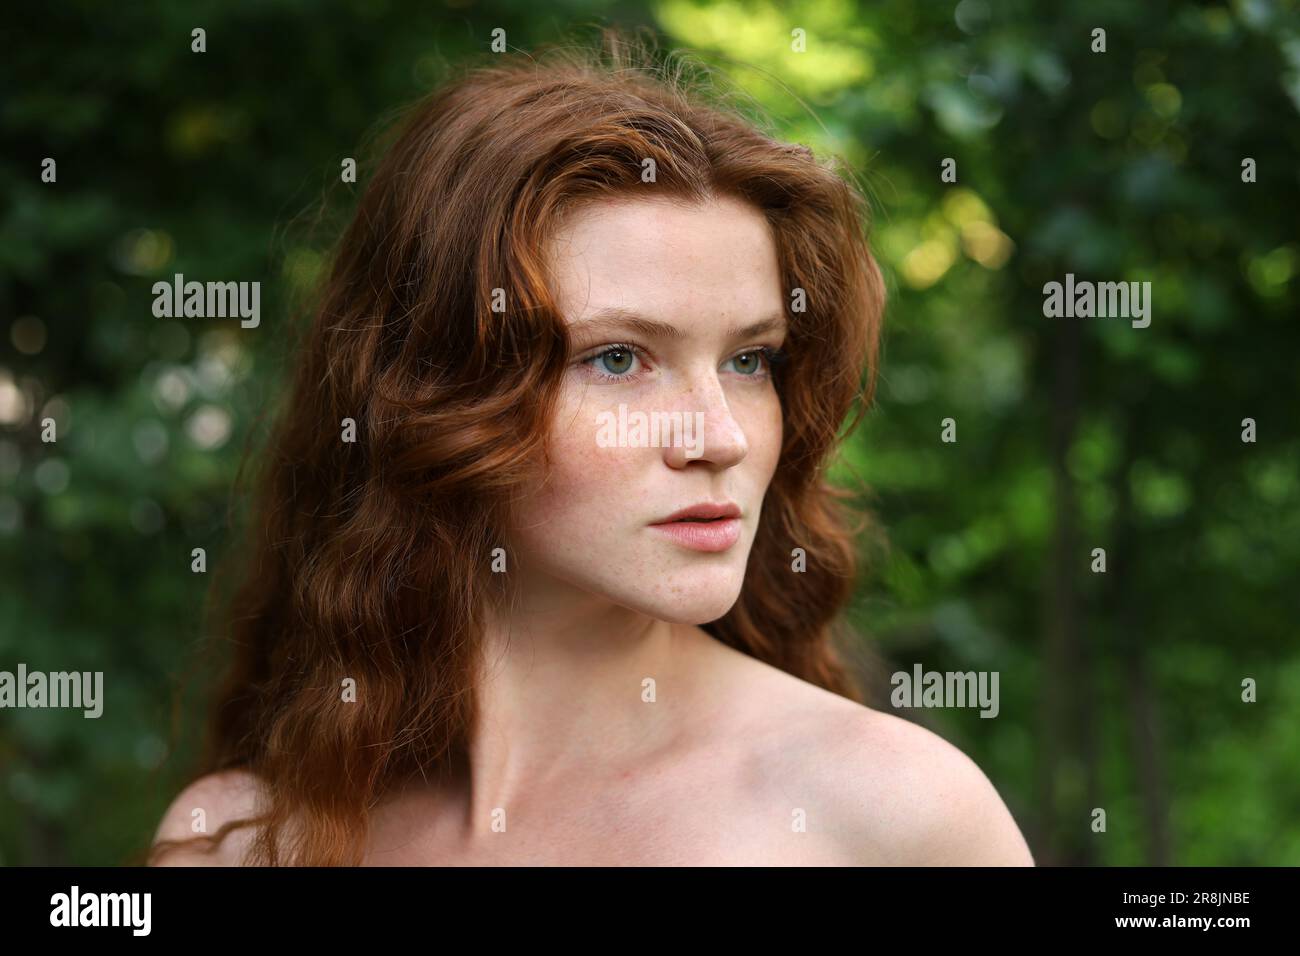 Sinnliche Nahaufnahme im Freien Porträt eines jungen, weißen Ingwer attraktiven Mädchens mit roten Haaren und Sommersprossen im Sommerpark, natürliche weibliche Schönheit Stockfoto